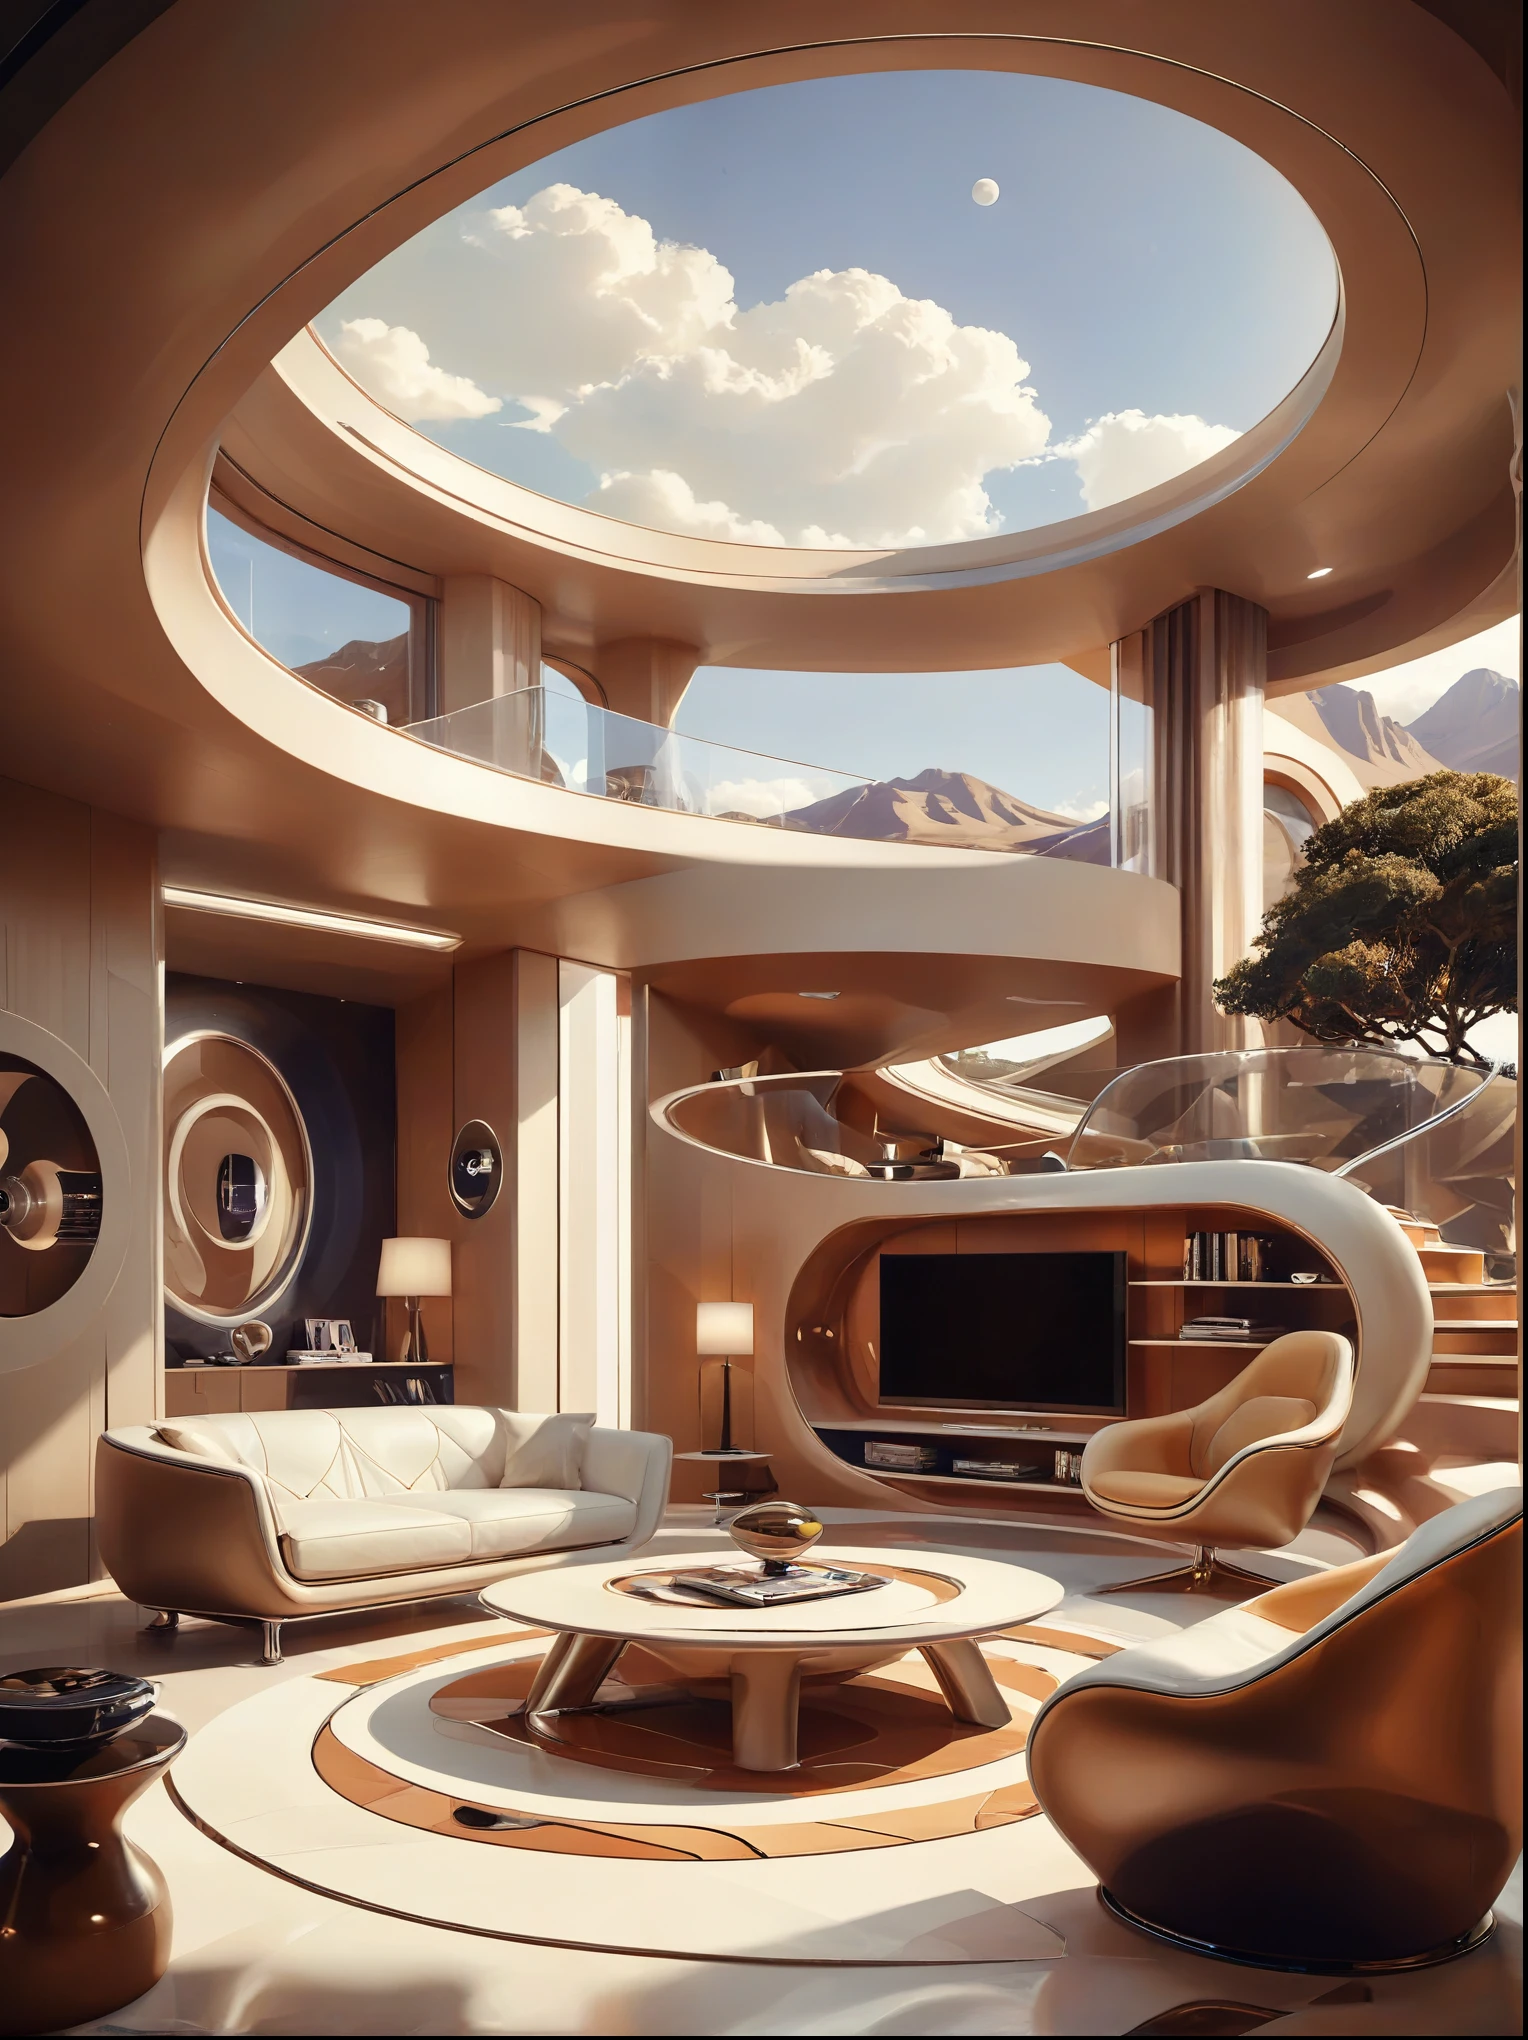 O conceito de estudo de sala de estar para uma casa futurista incorpora fluidez orgânica、Círculos e formas geométricas，e use a imaginação artística para representar casas e paisagens, 